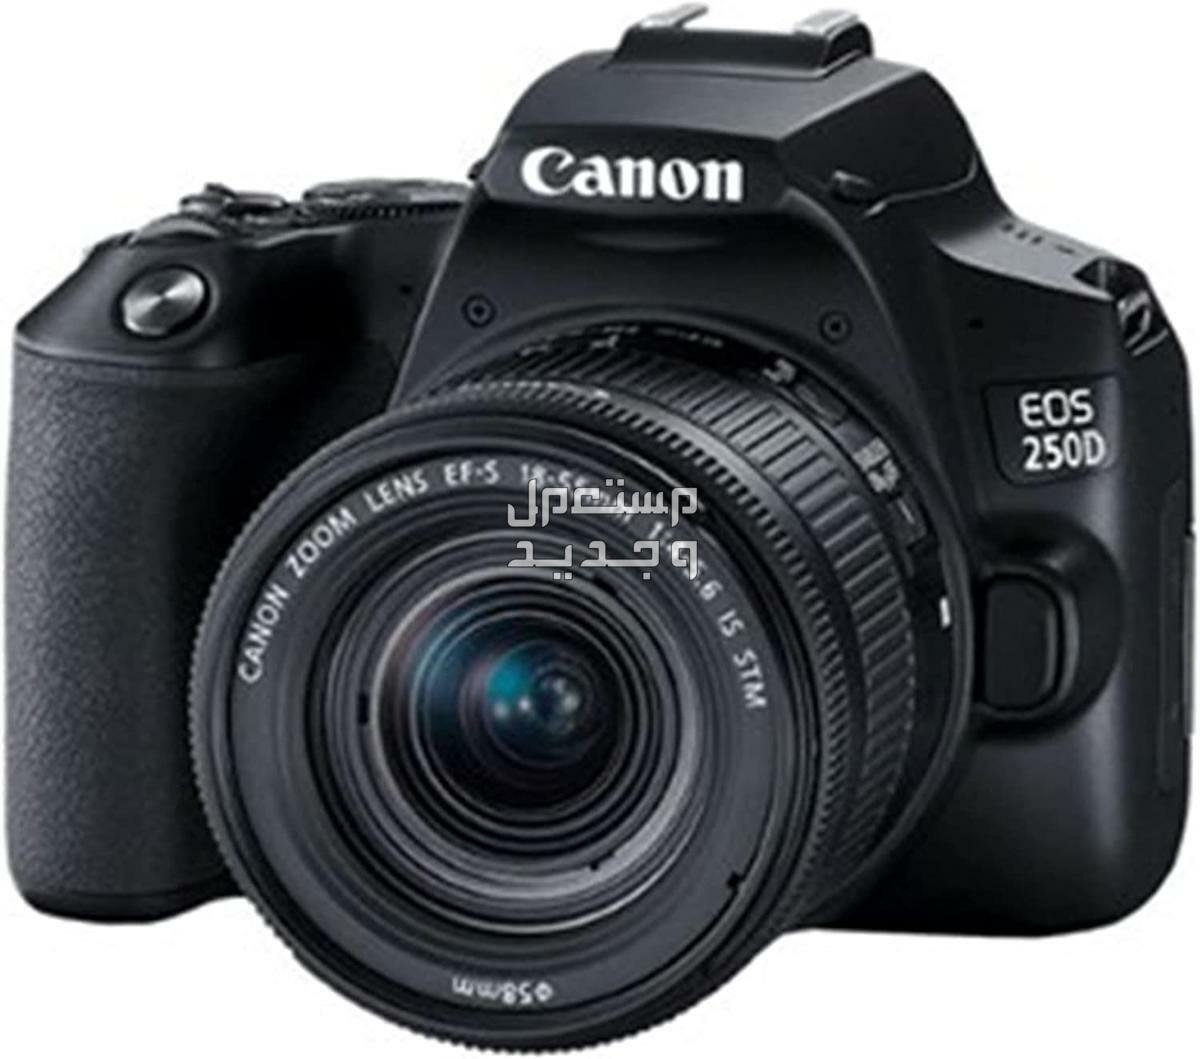 سعر ومميزات ومواصفات أرخص 5 كاميرات تصوير من كانون في فلسطين كاميرا Canon EOS 250D